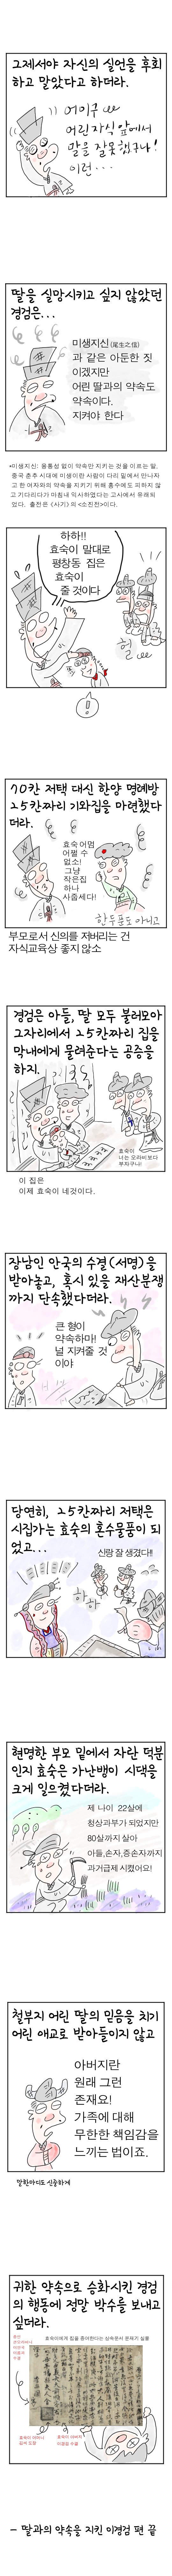 [역사툰] 史(사)람 이야기 16화: 딸바보 이경검